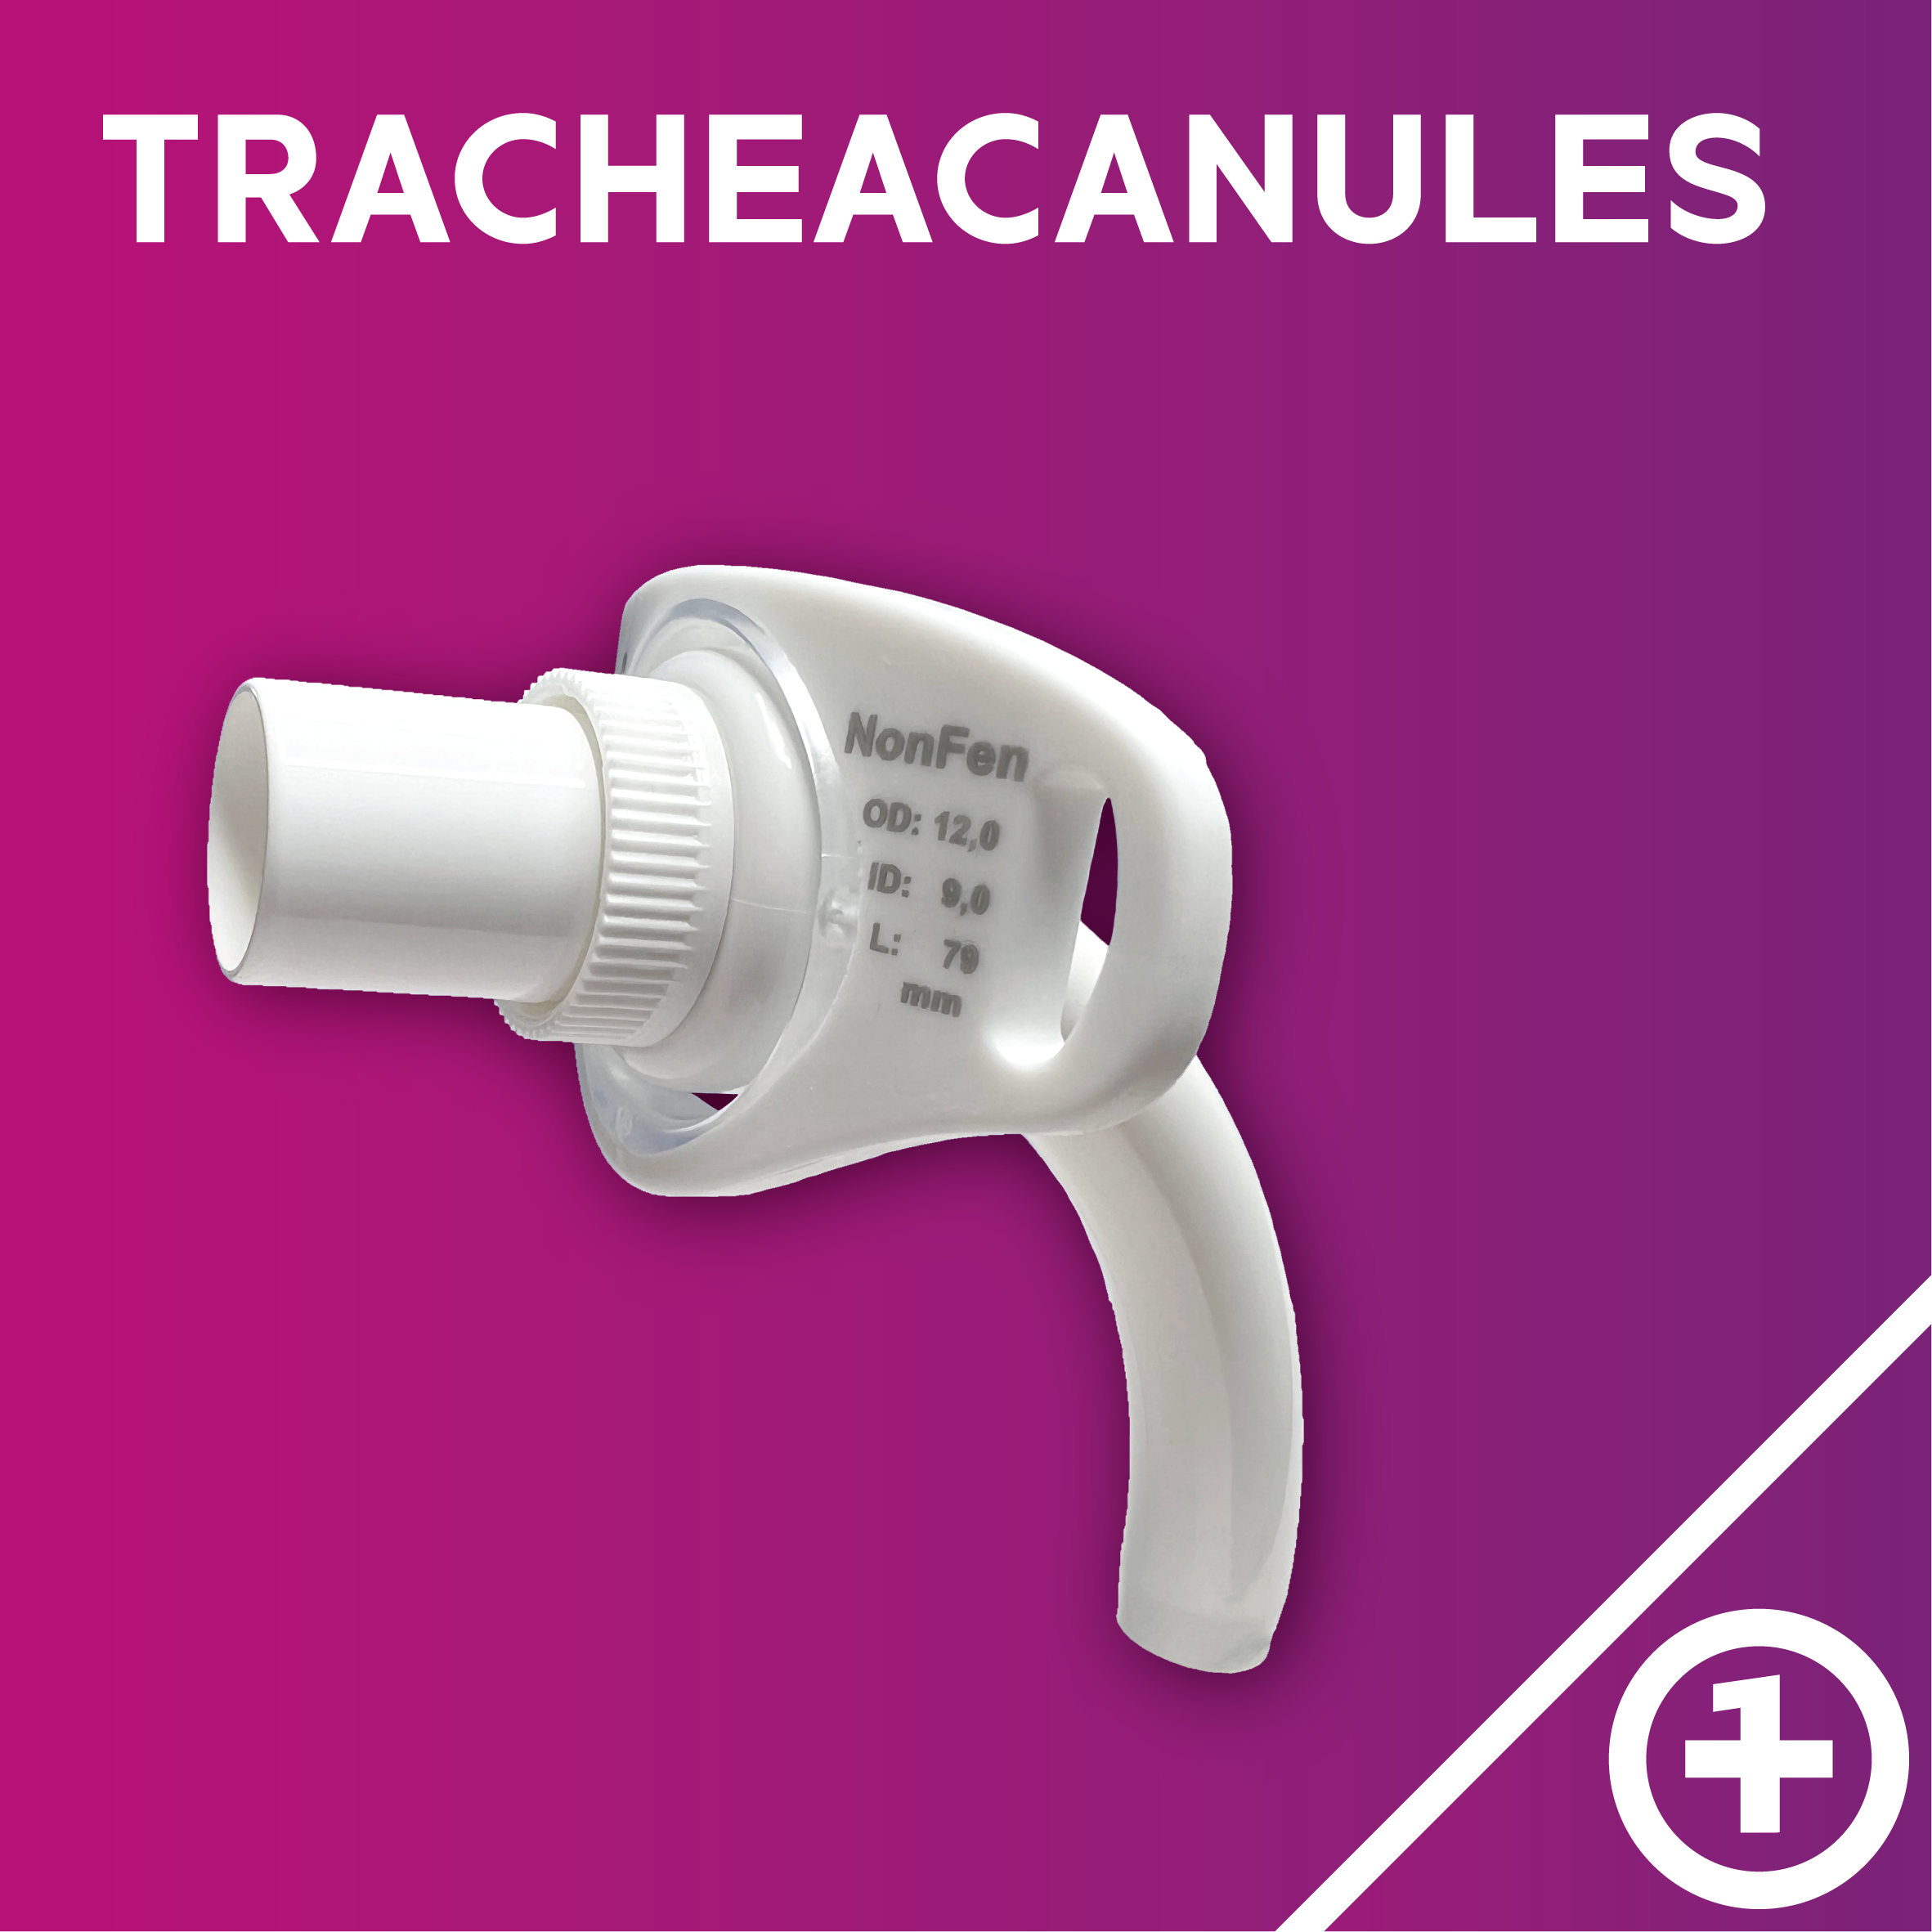 Tracheacanules